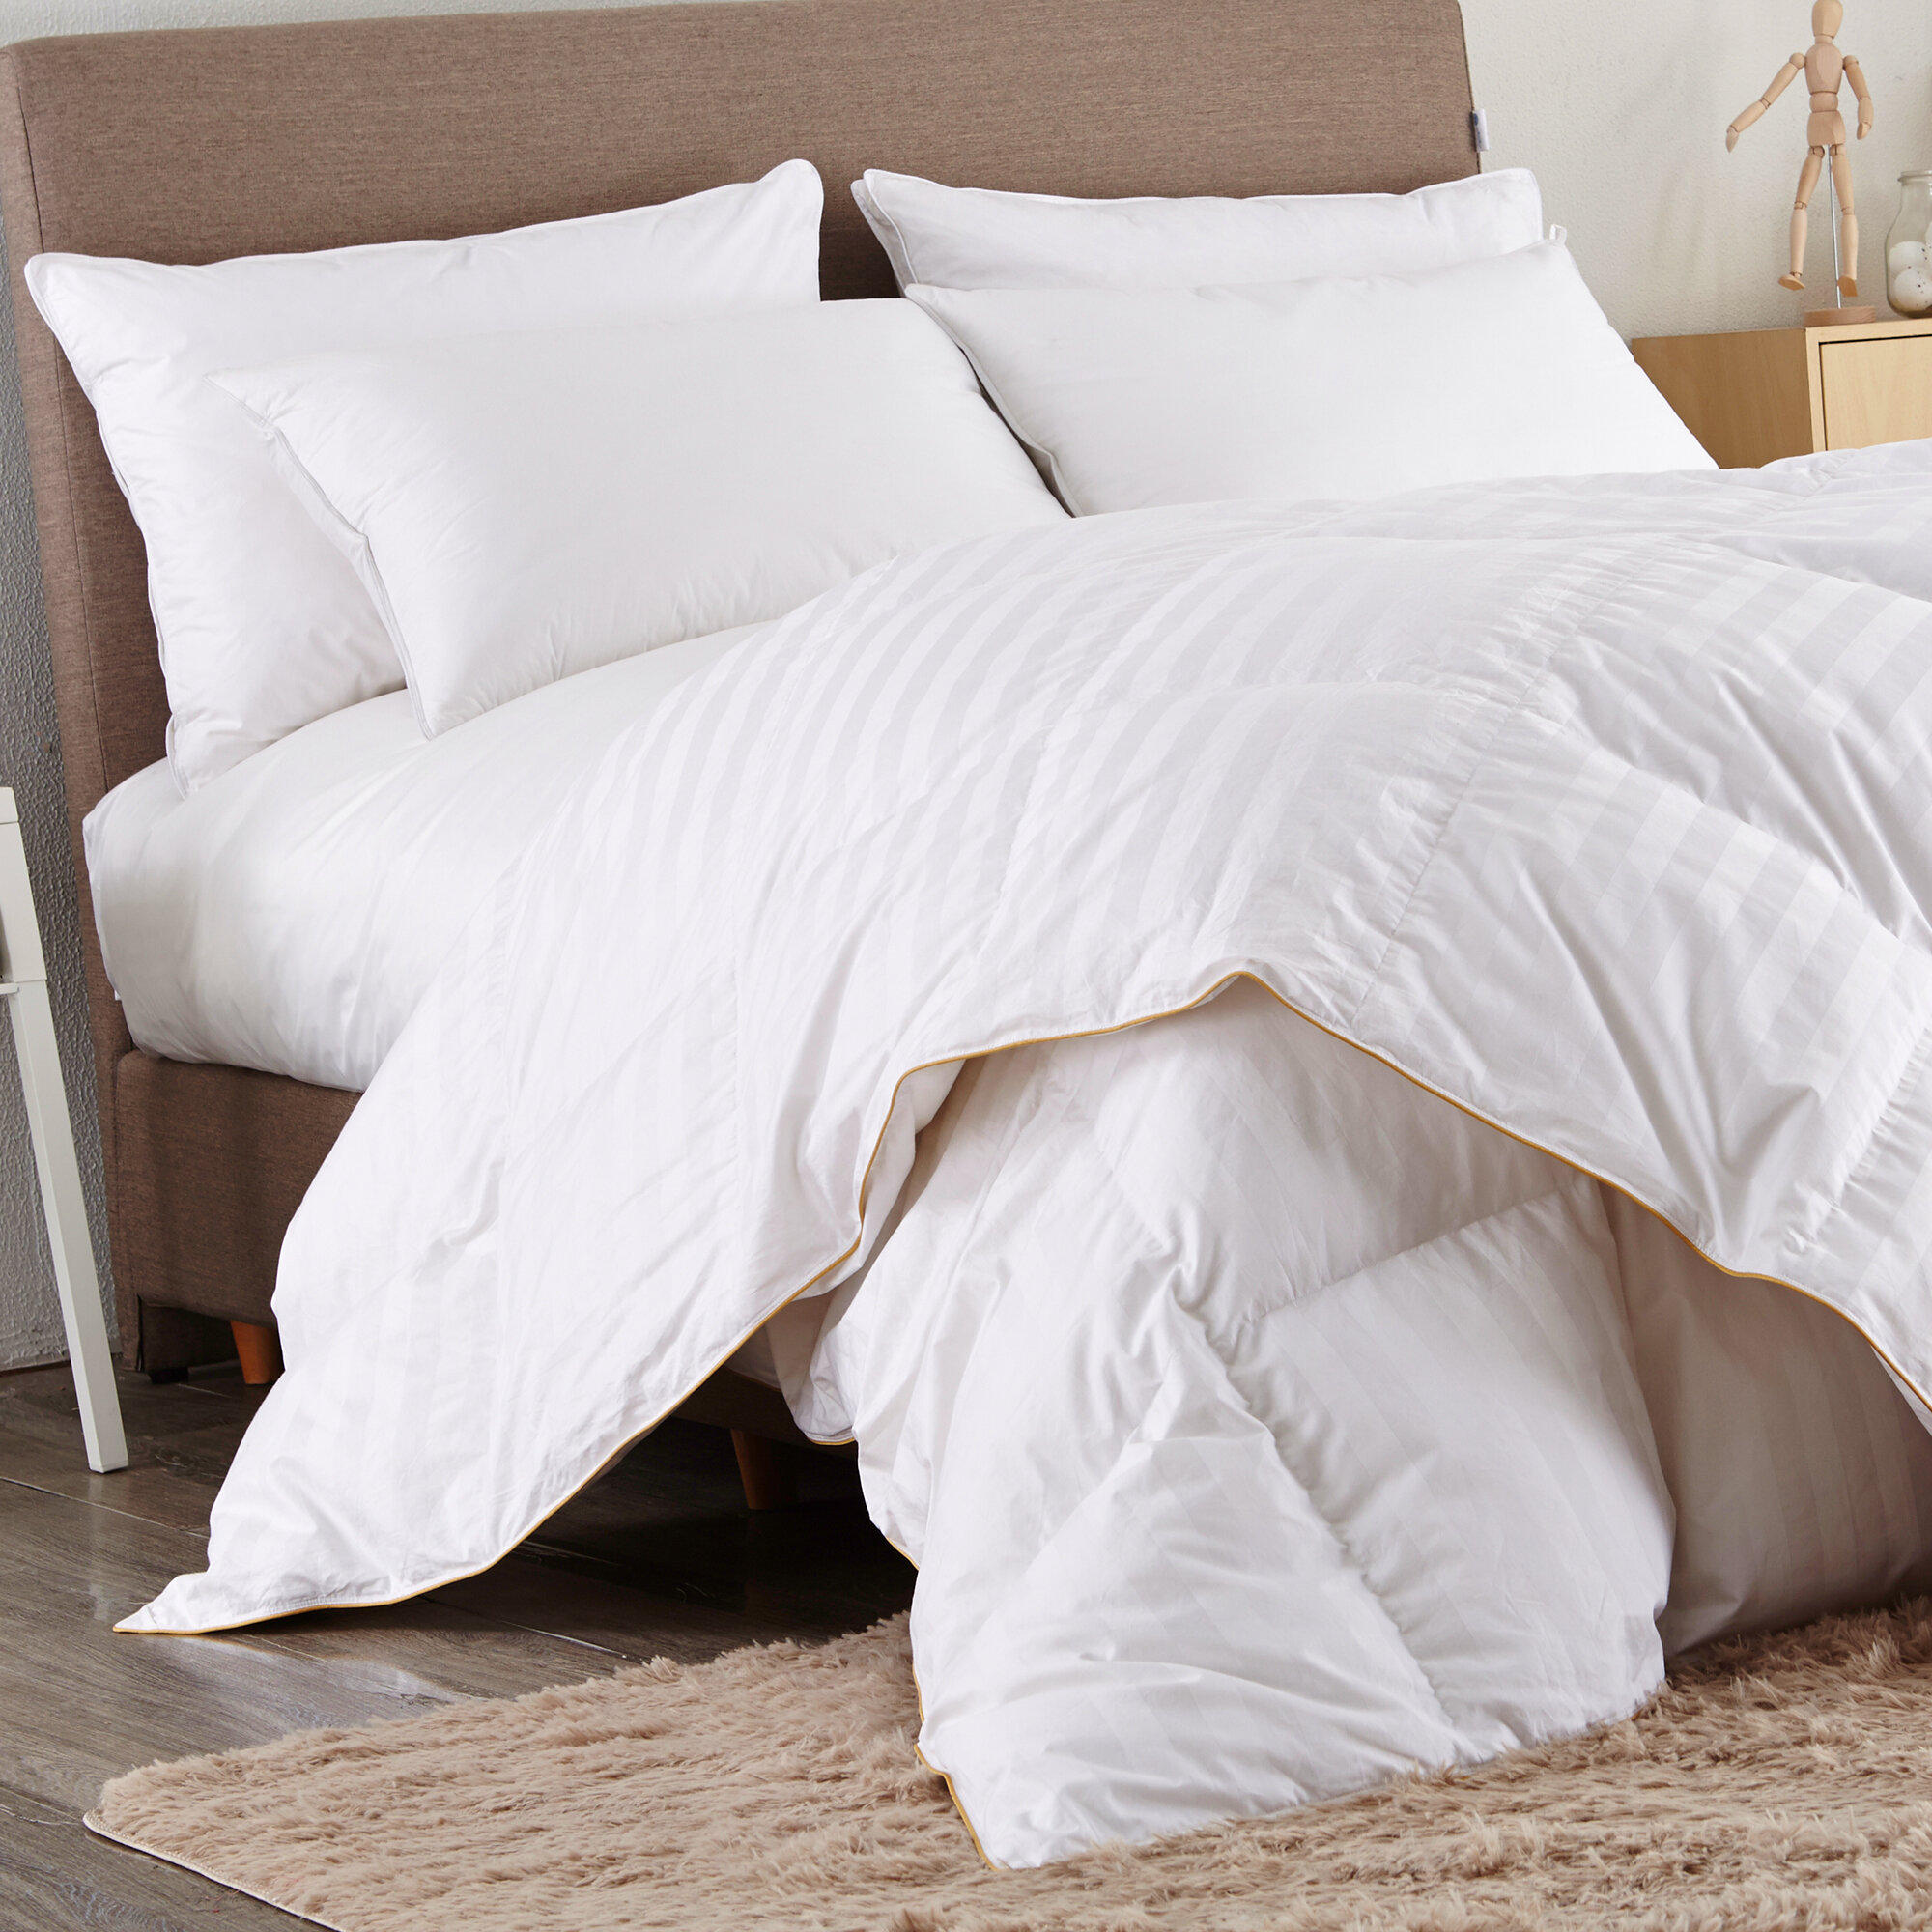 Bedding 101 How To Pick The Best Down Comforter Wayfair